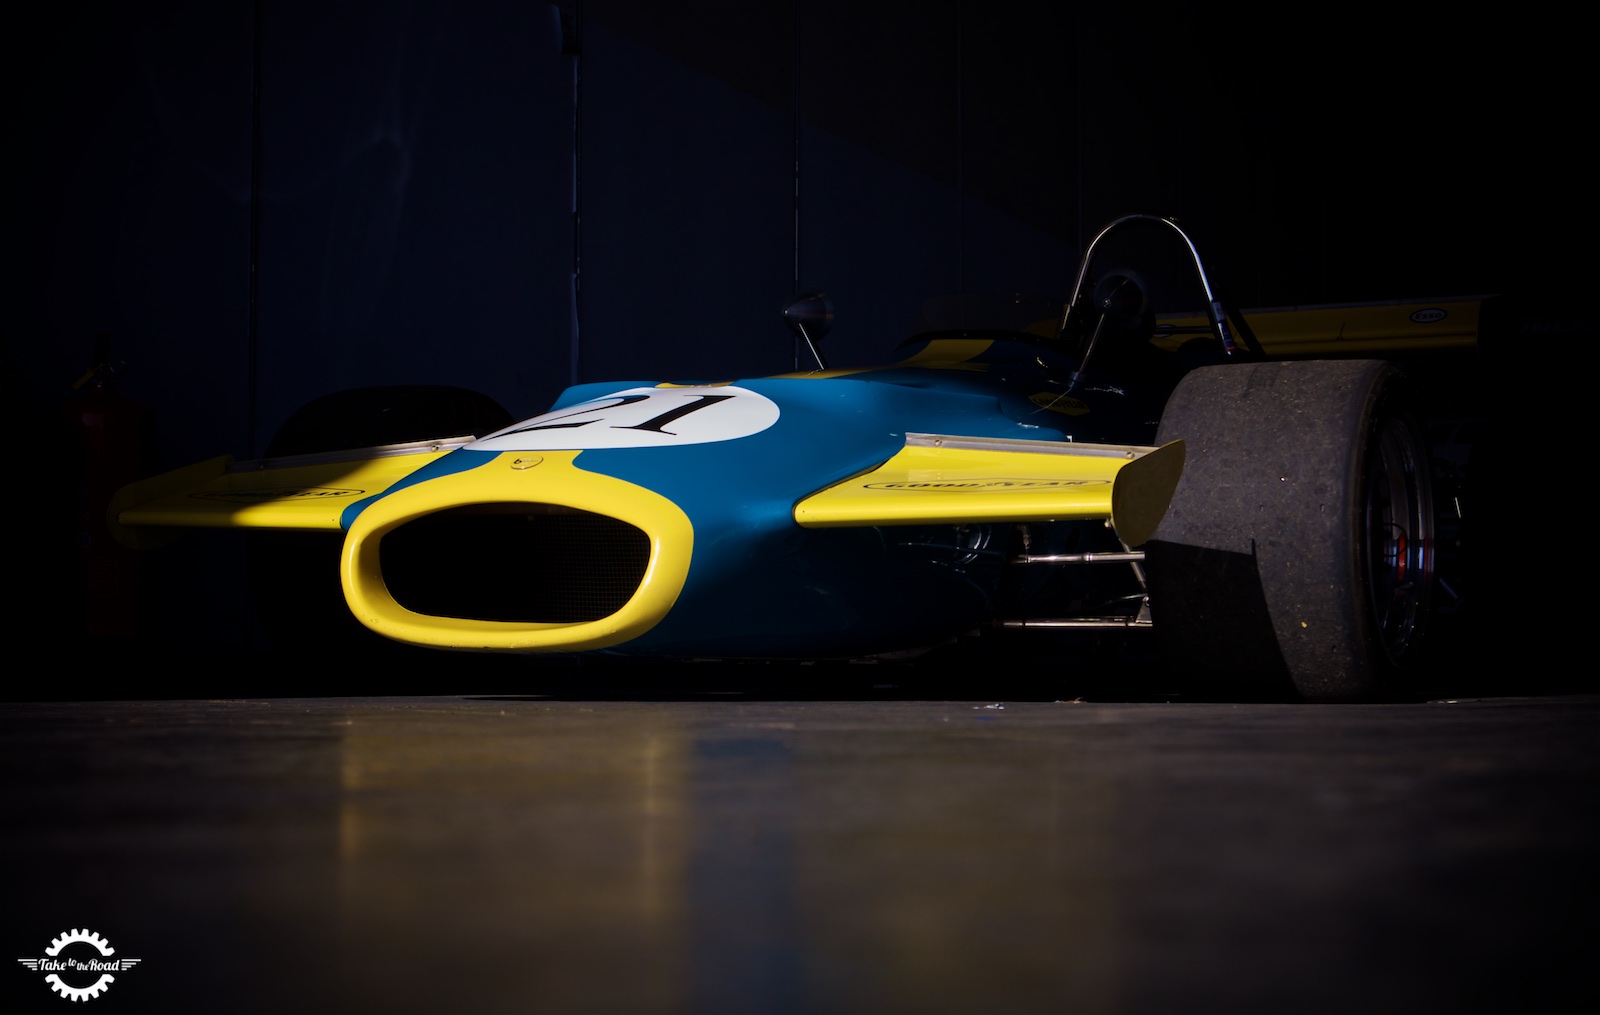 Insuring a Historic Formula 1 car for less than a Ford Sierra